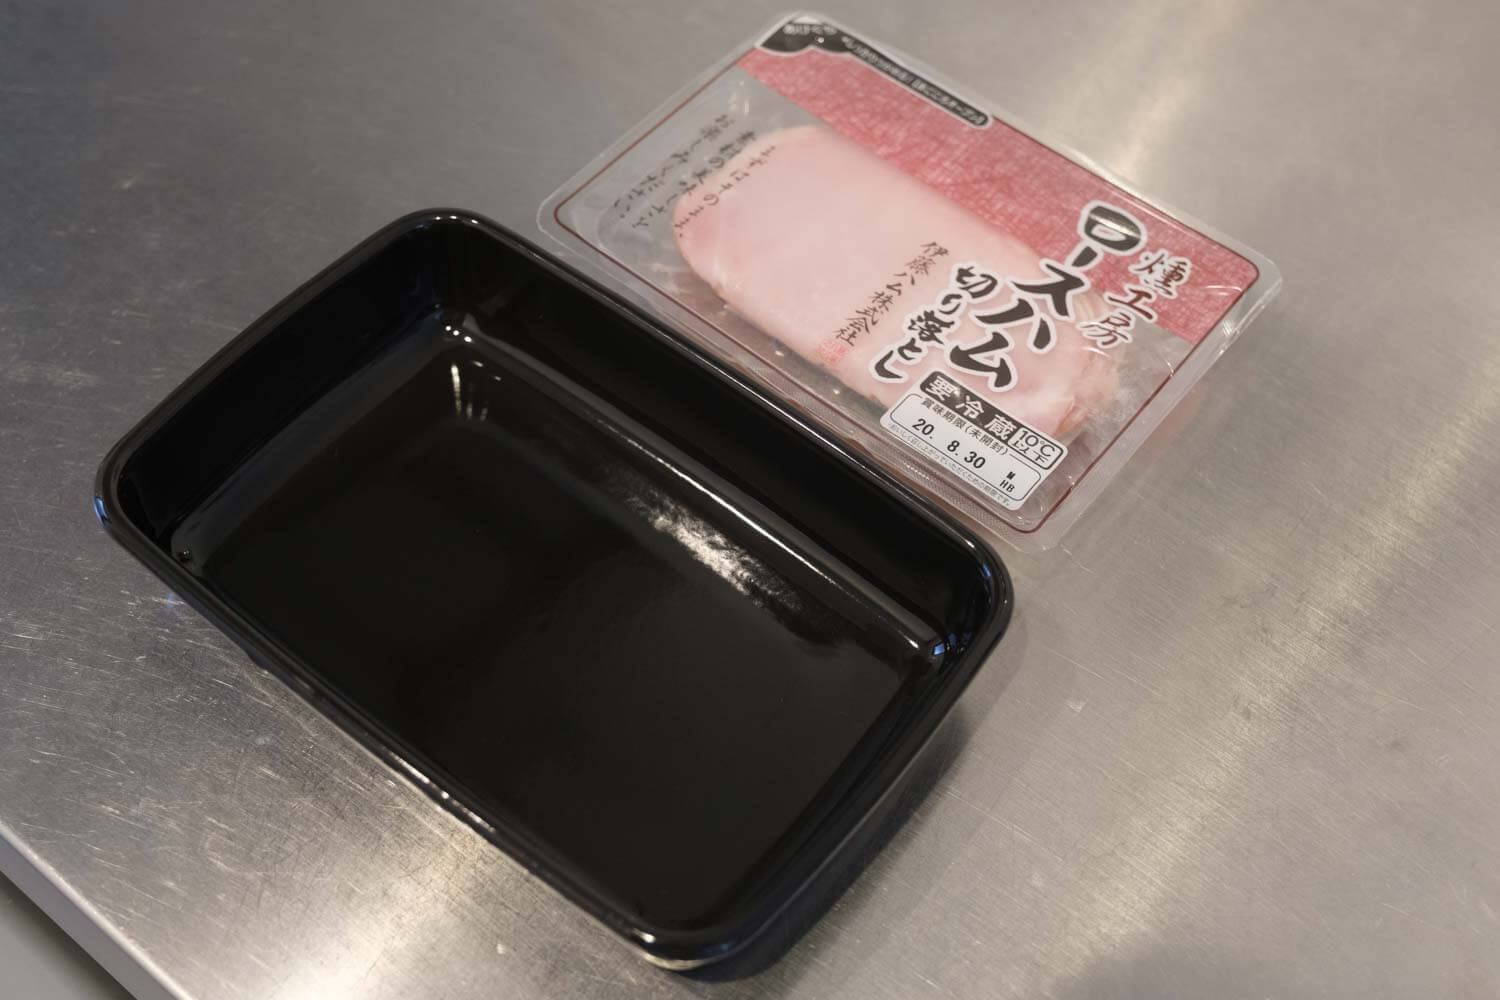 野田琺瑯のムック本 Daily Cooking Book付録の黒いレクタングル浅型Sサイズとハムのサイズ比較